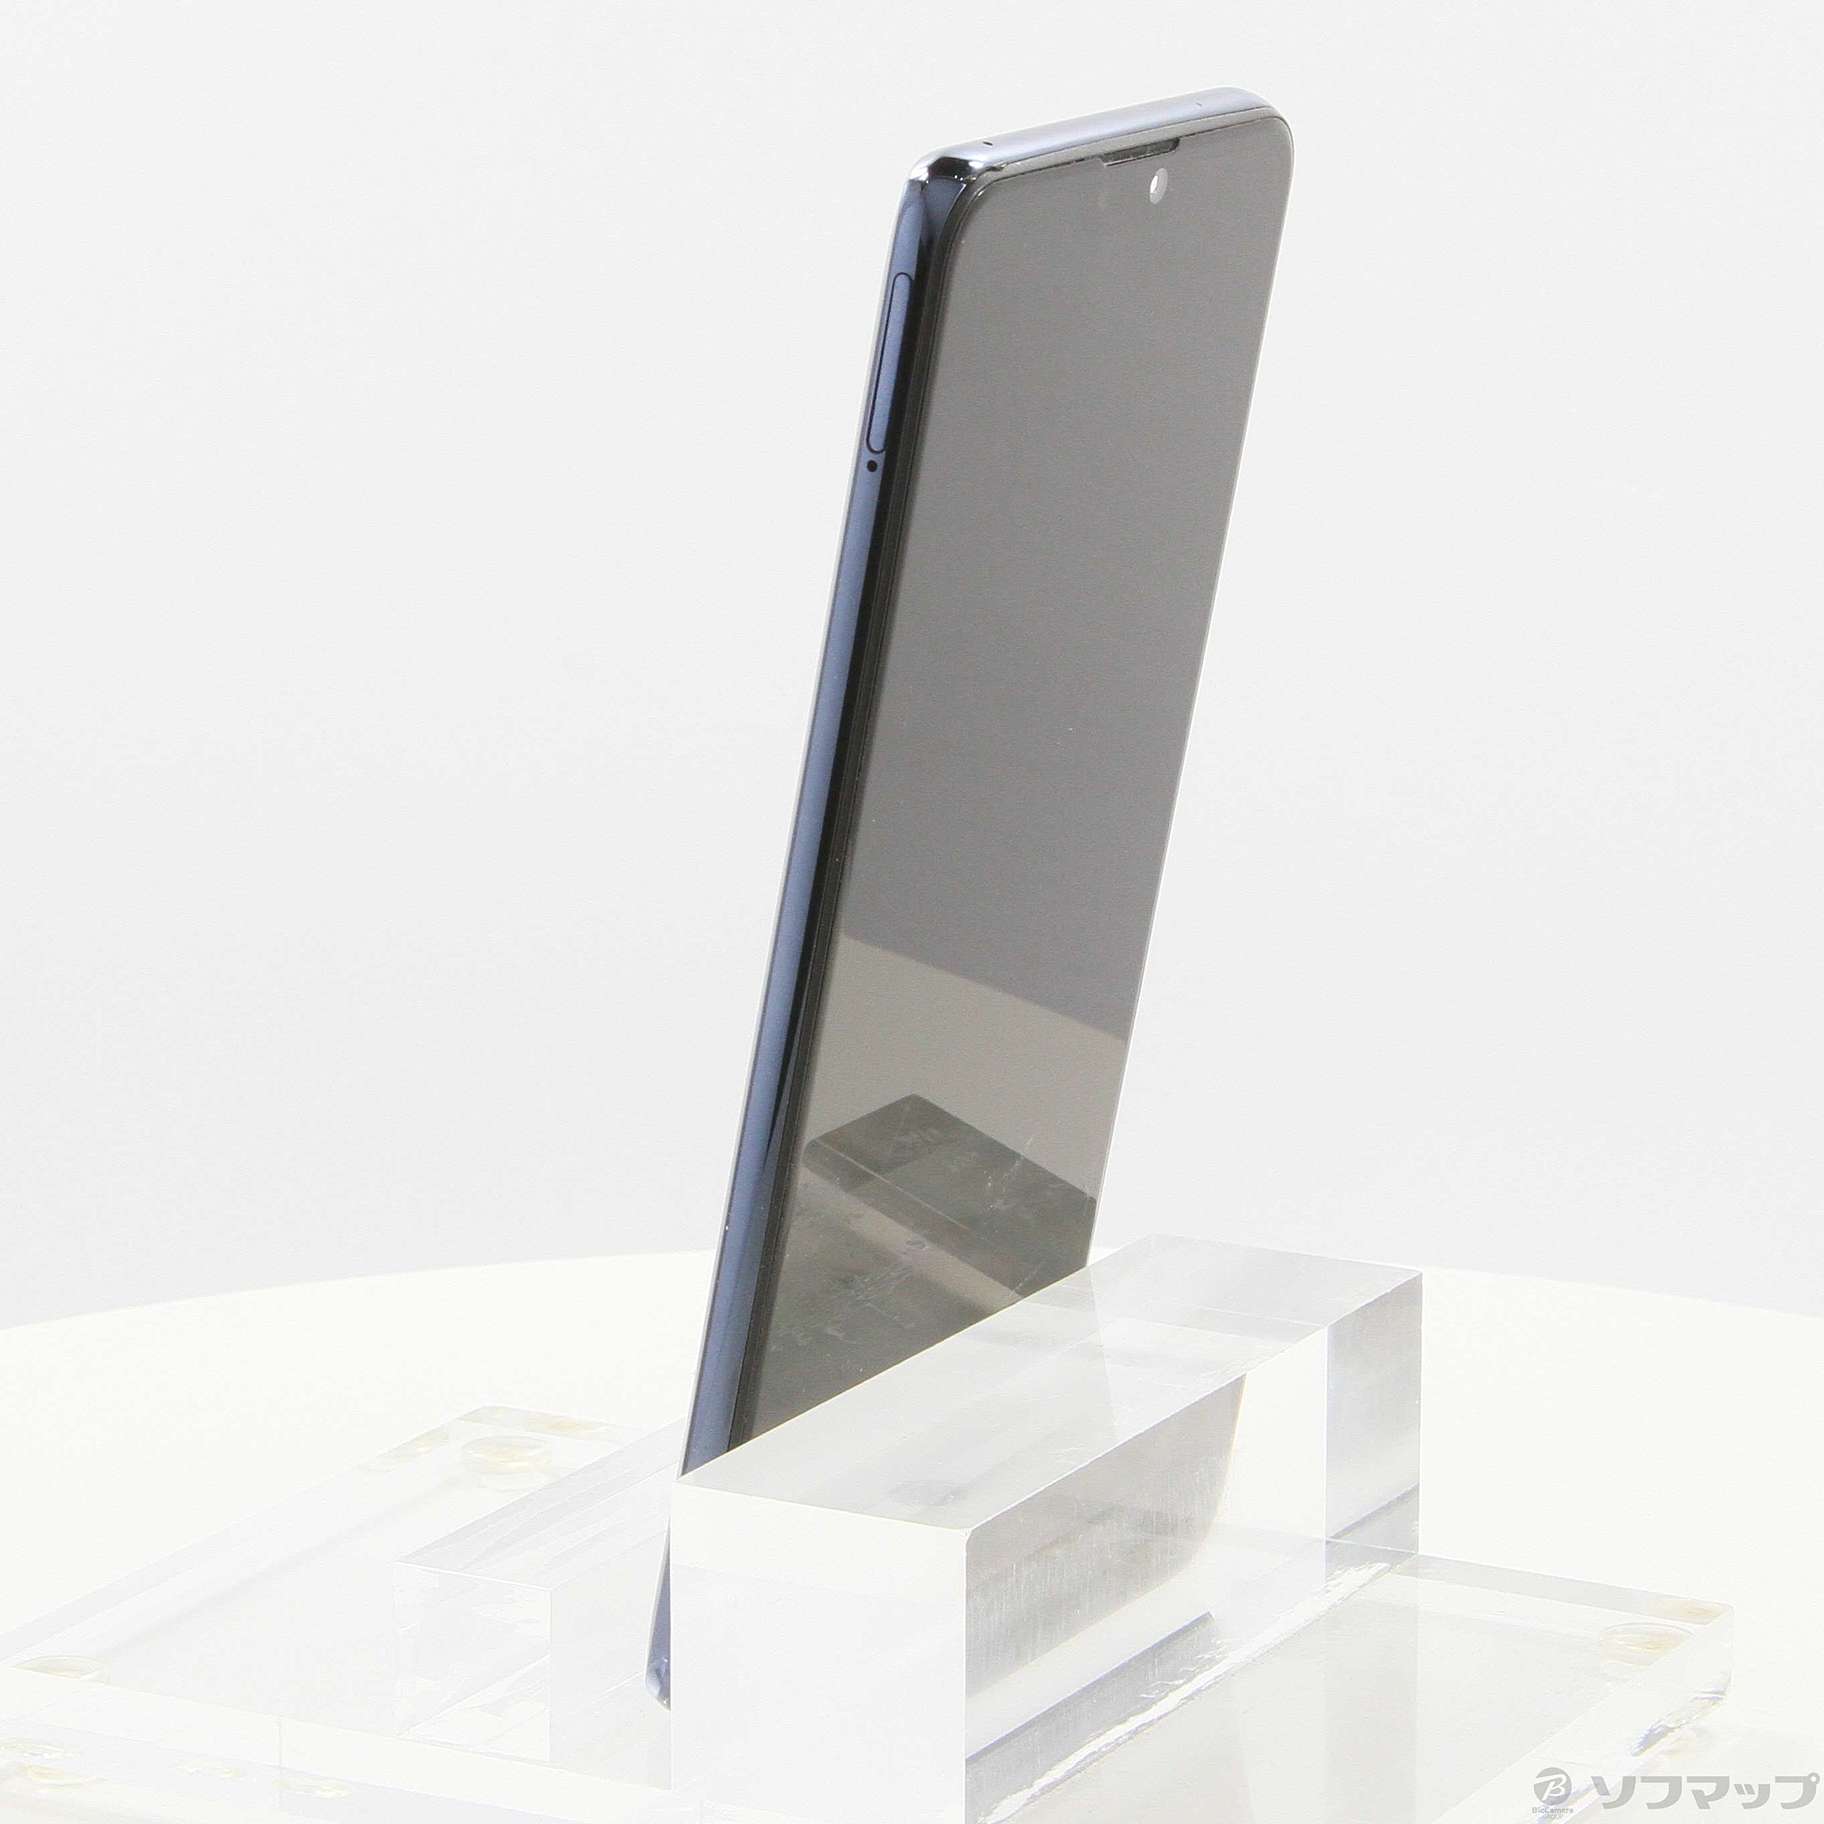 Zenfone Max M2 64GB SIMフリー